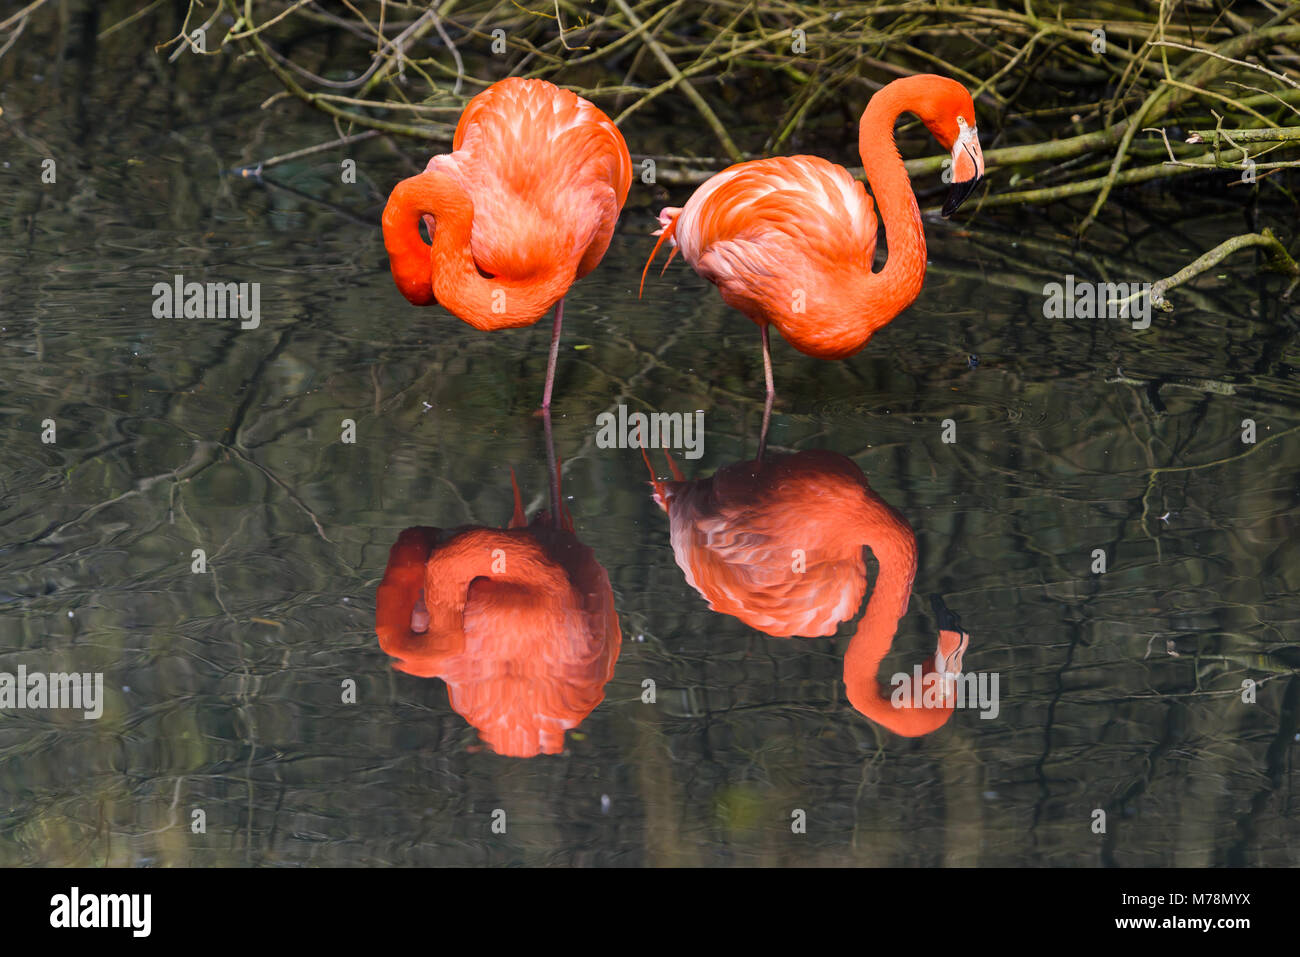 Les flamants roses ou les flamants roses sont un type d'oiseau échassier de la famille des Coraciidés. De flamants roses viennent d'Amérique latine Banque D'Images